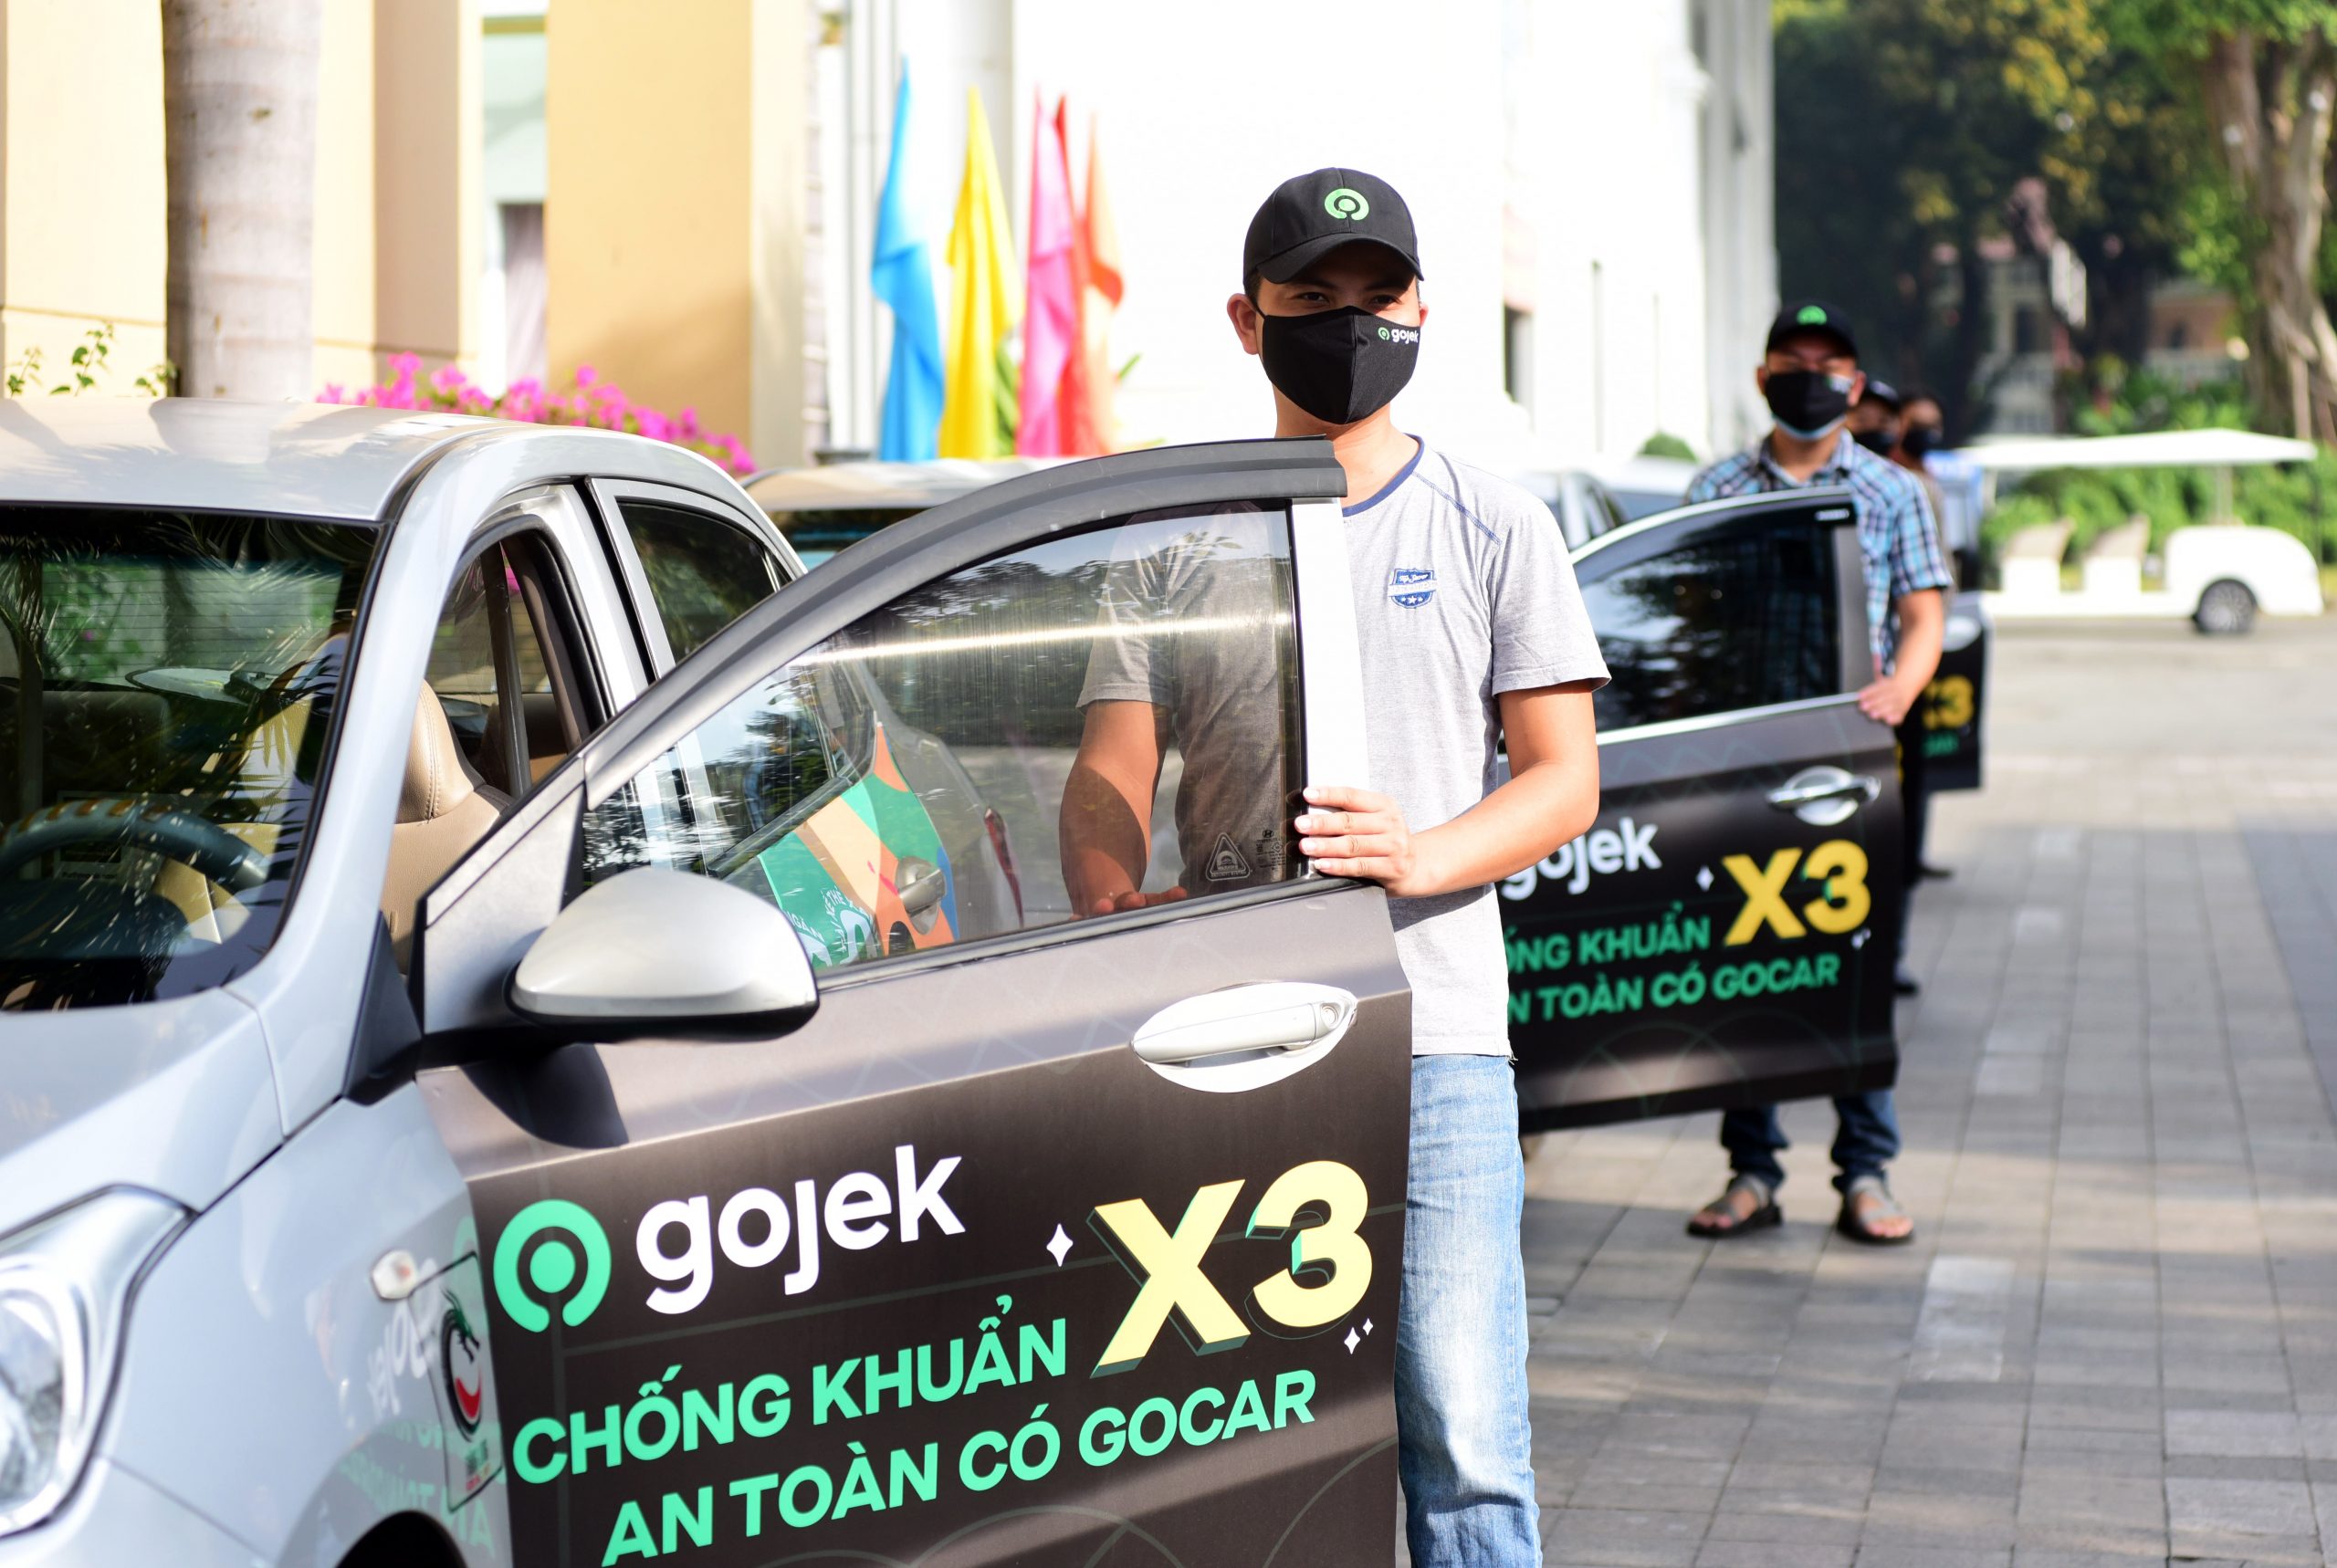 Gojek Việt Nam được Global Brands Magazine bình chọn là “Siêu ứng dụng mới tốt nhất"